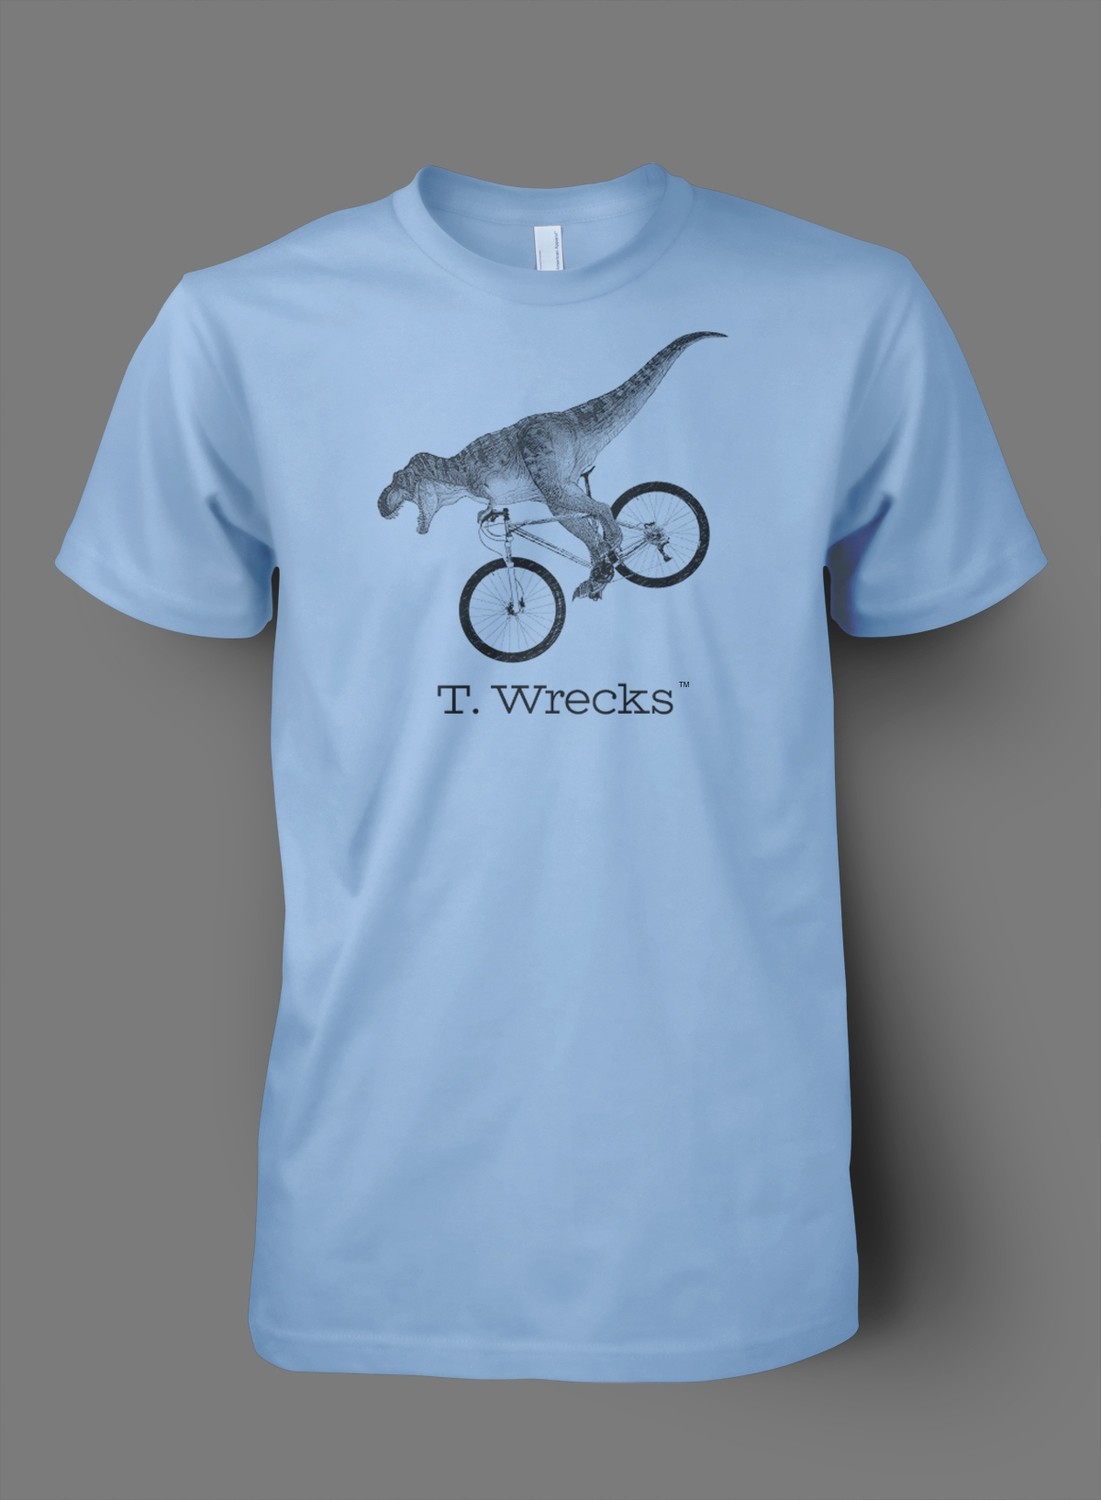 T. Wrecks Tee (Blue)